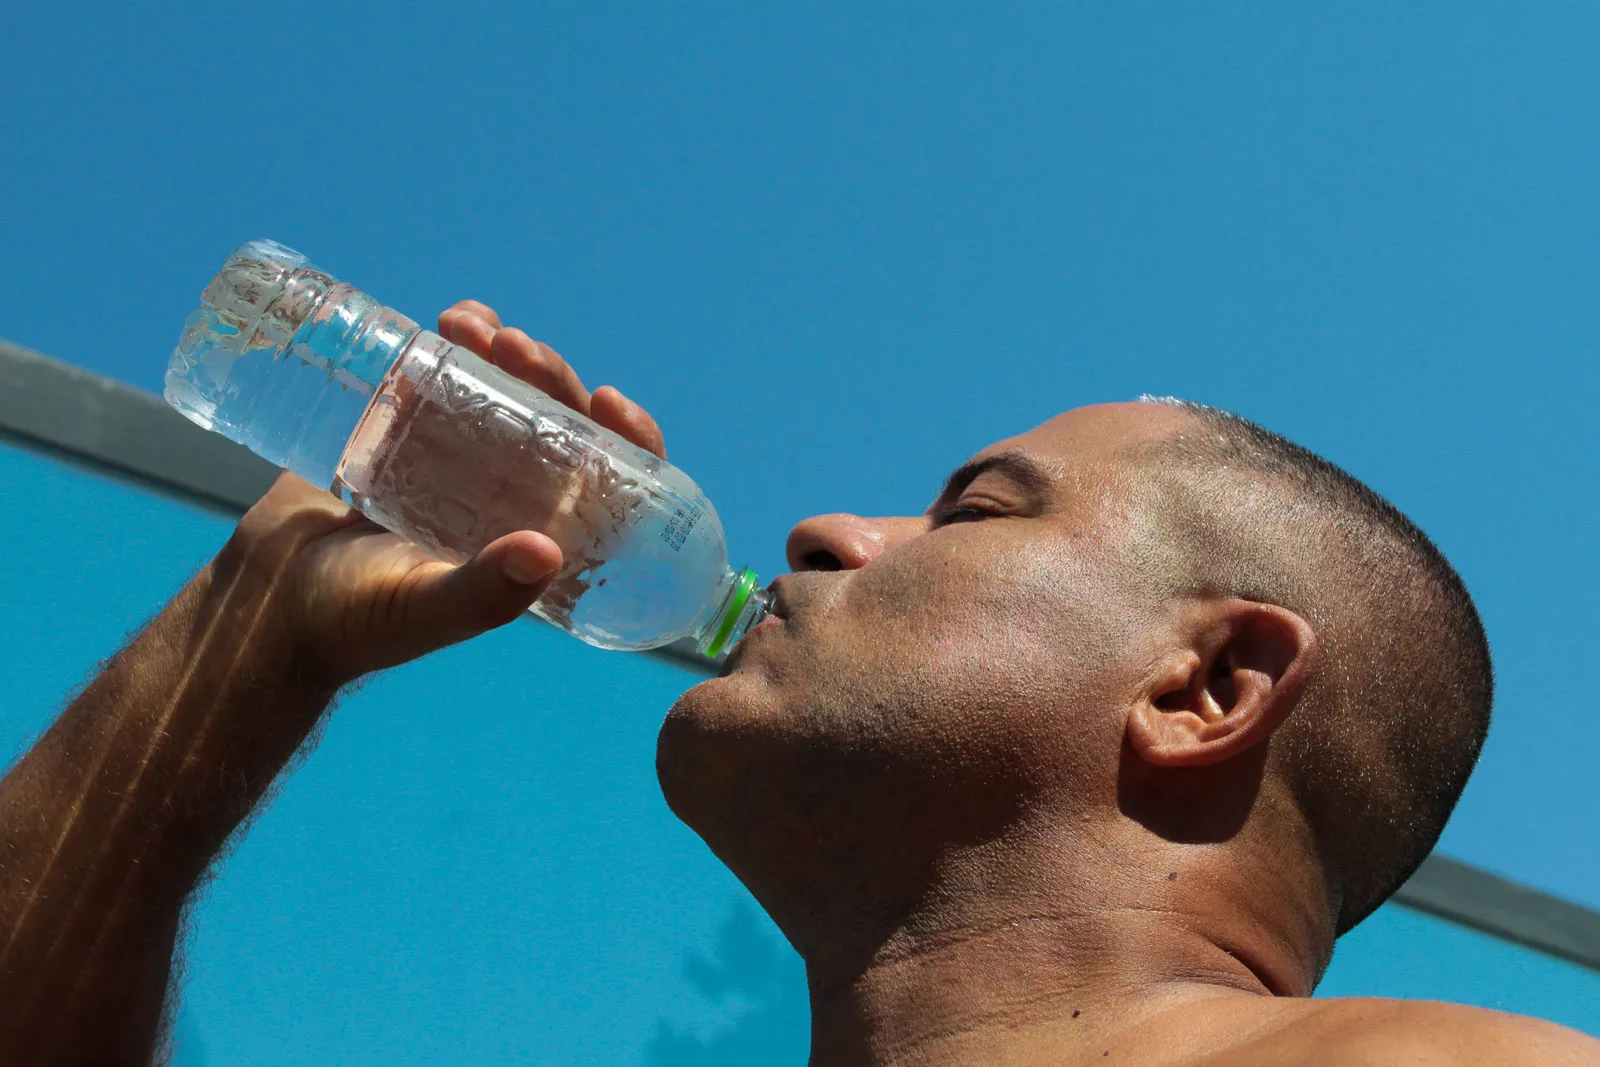 É recomendado que a população beba bastante água, use roupas leves e protetor solar